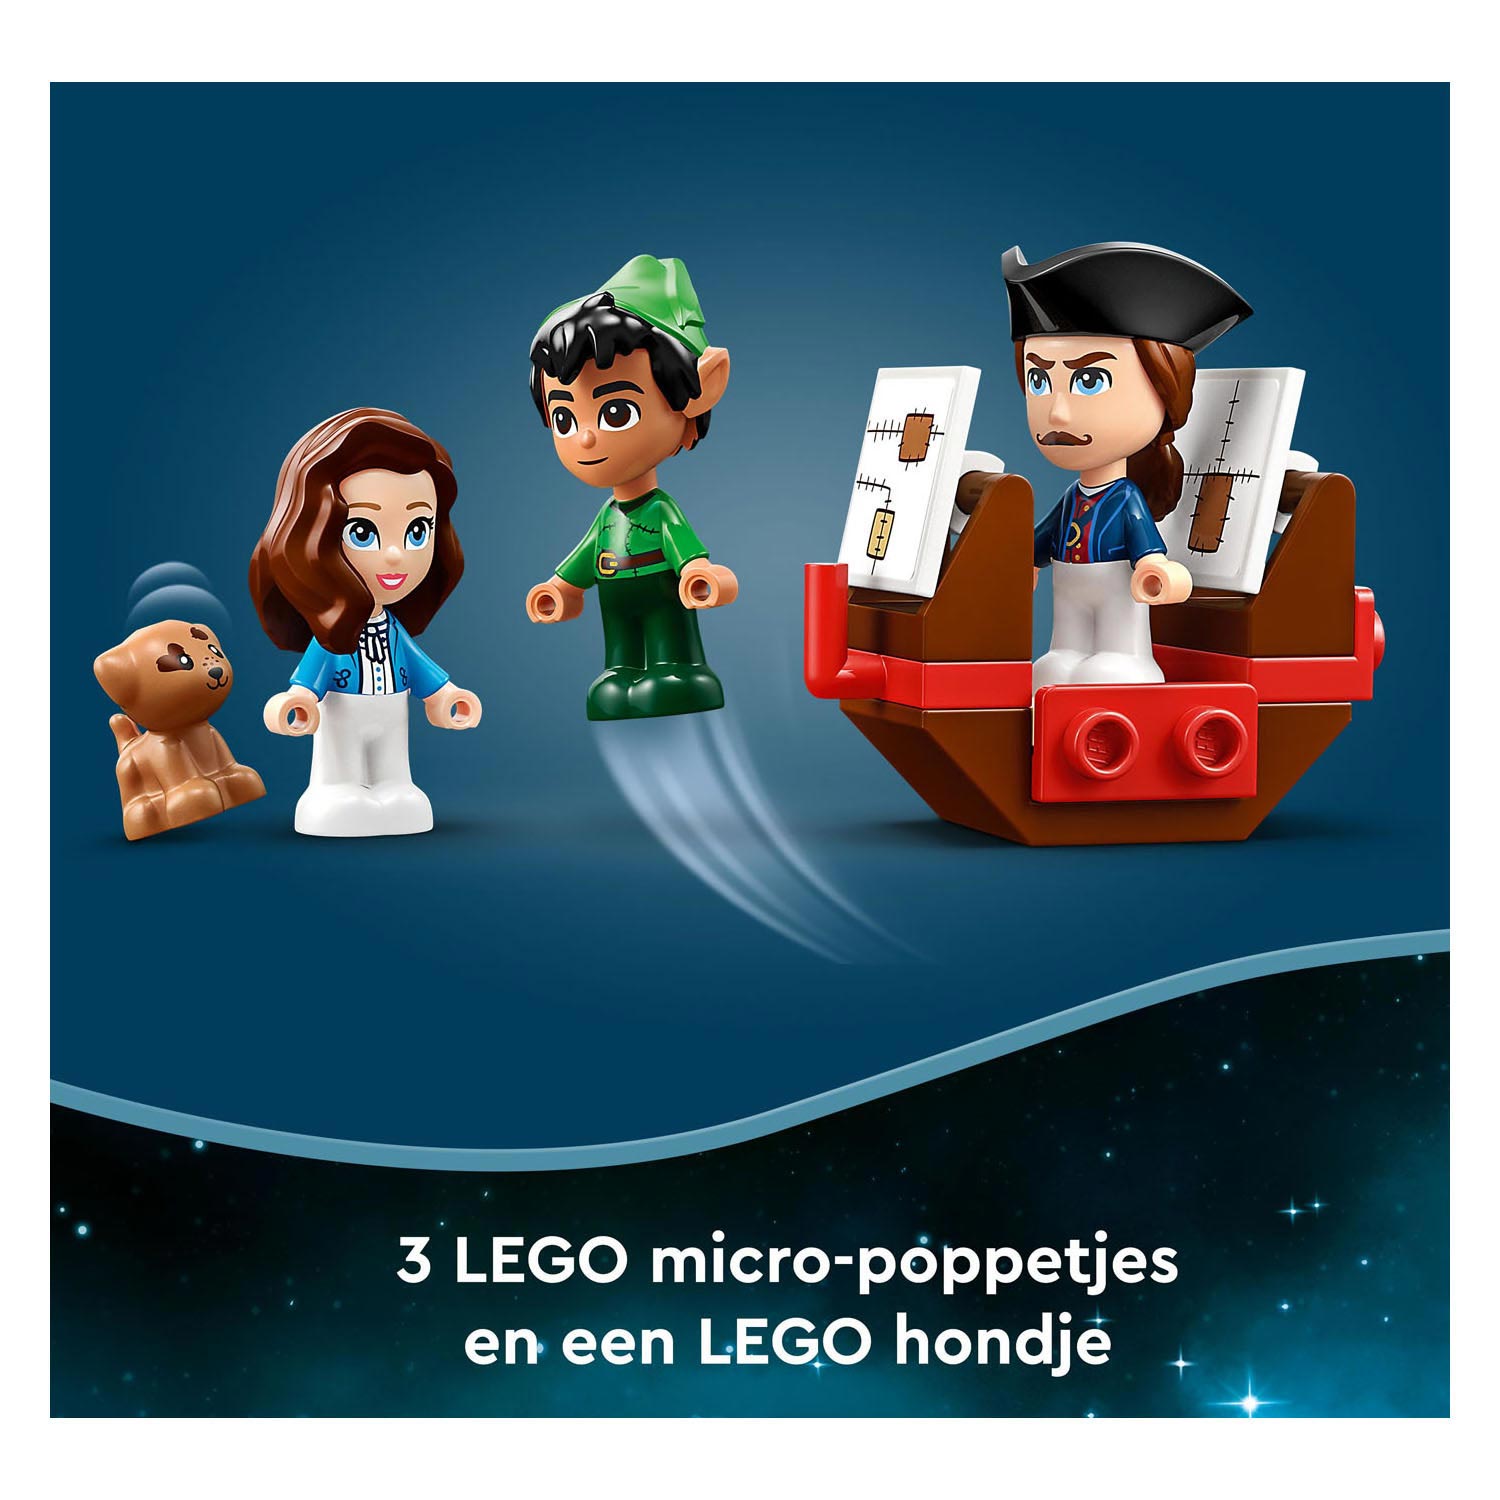 LEGO Disney Abenteuerset „Peter Pan und Wendys Märchenbuch“.